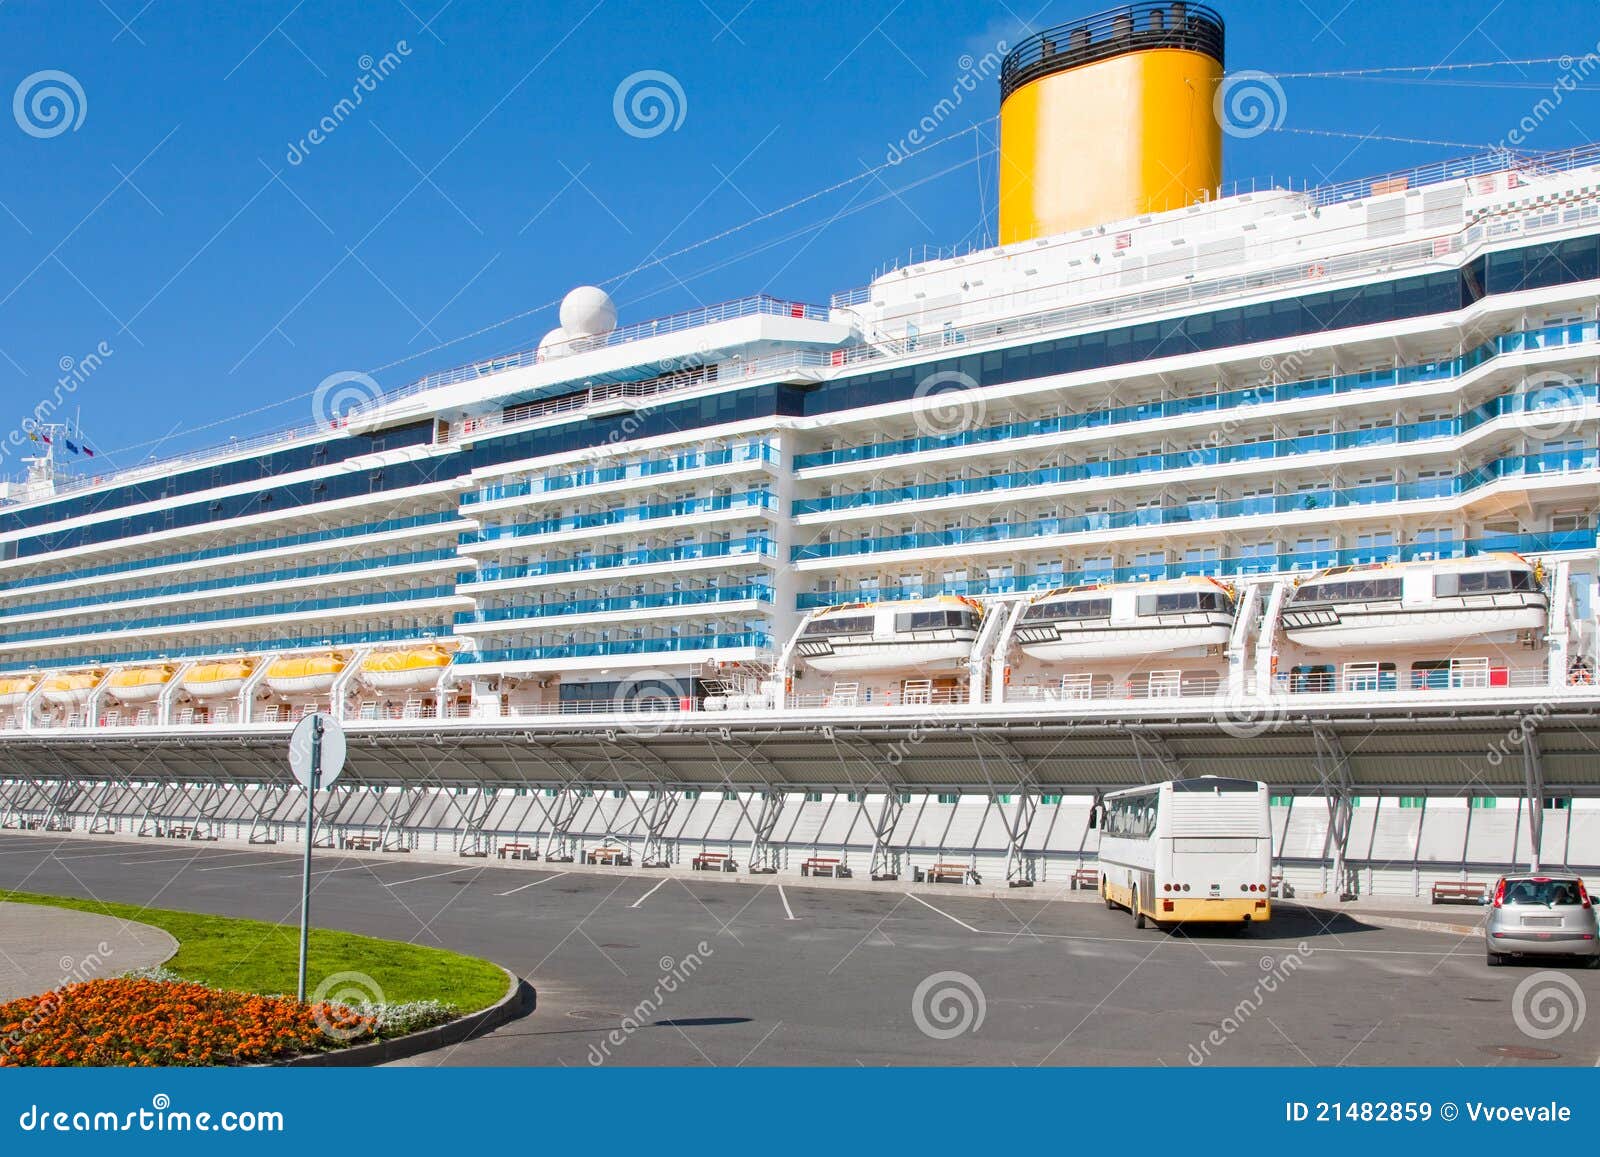 De voering van de cruise in haven. De voering van de cruise in St. Petersburg nieuwe haven